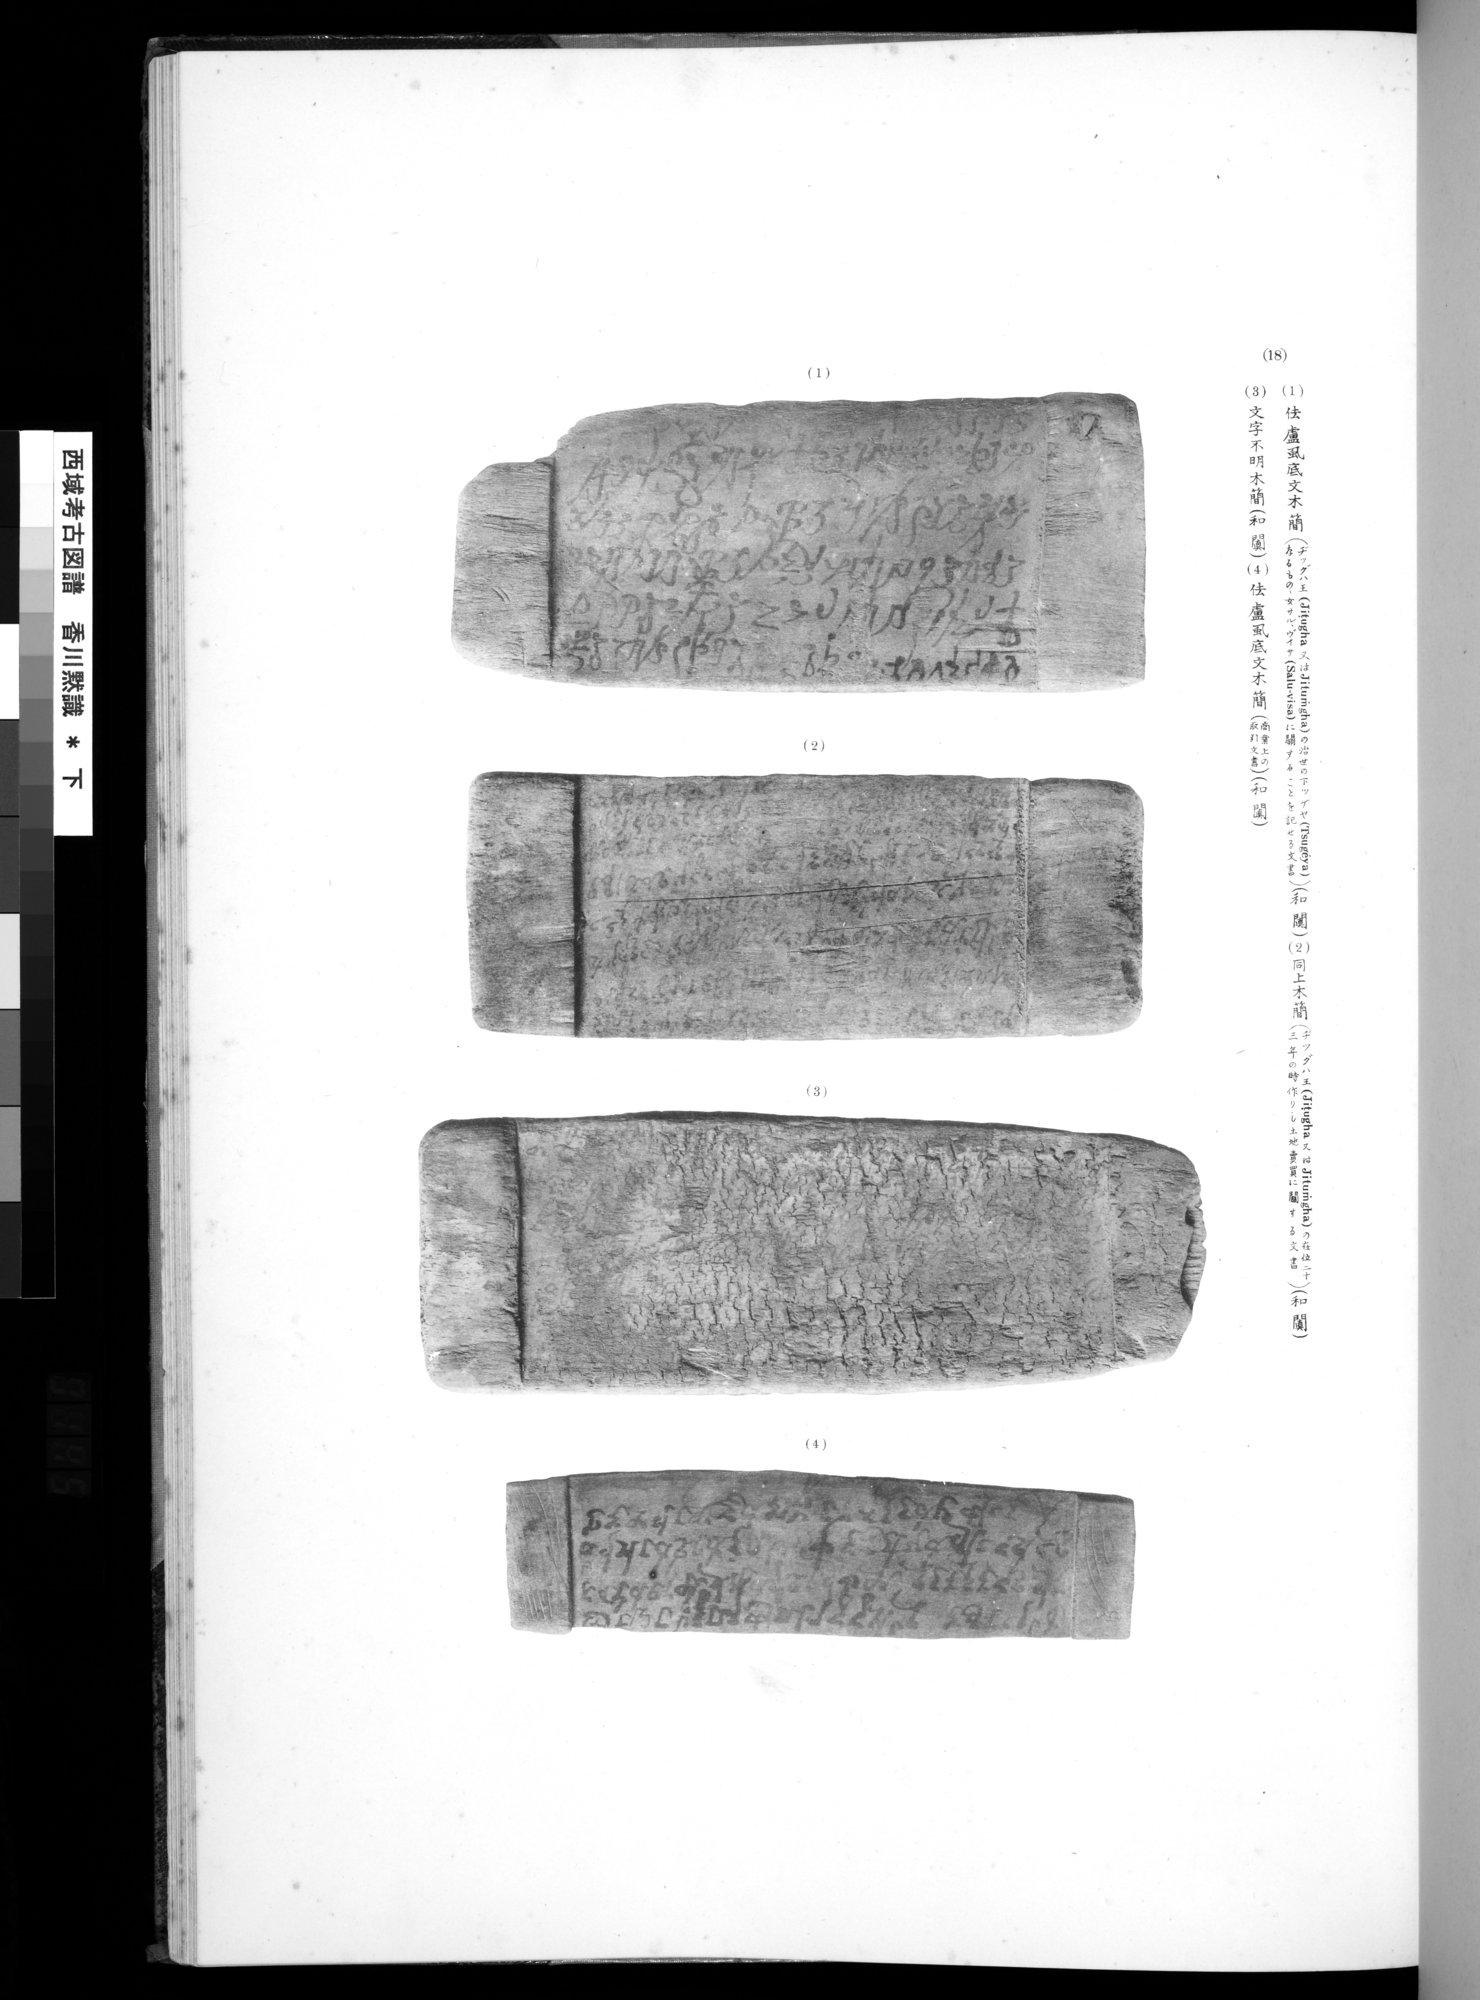 西域考古図譜 : vol.2 / Page 289 (Grayscale High Resolution Image)